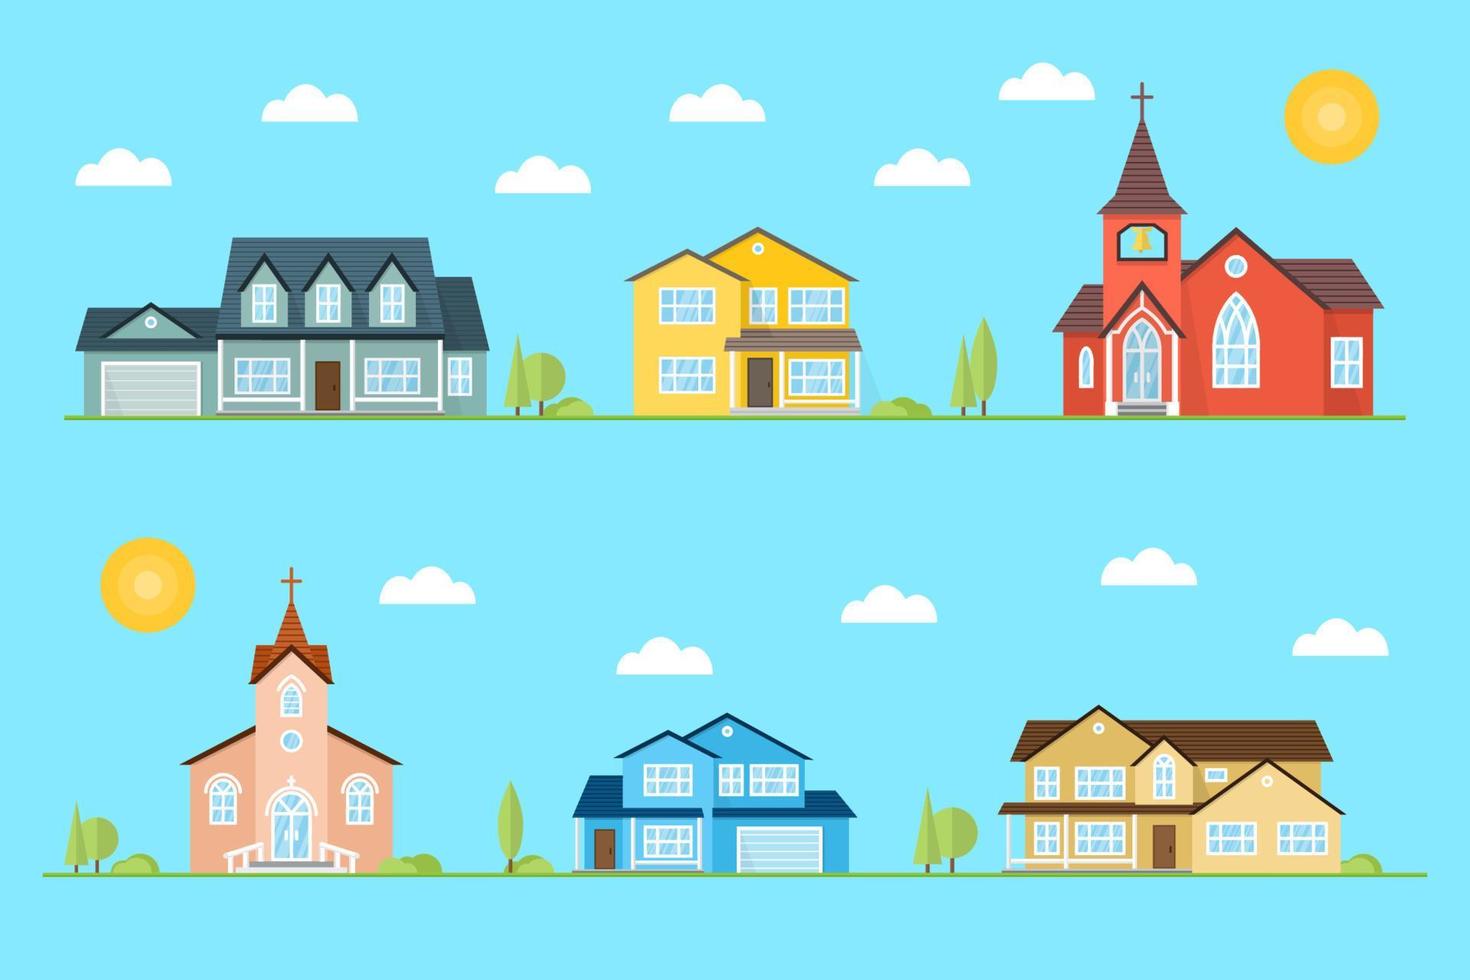 bairro com casas e igrejas ilustradas em fundo azul. vetor